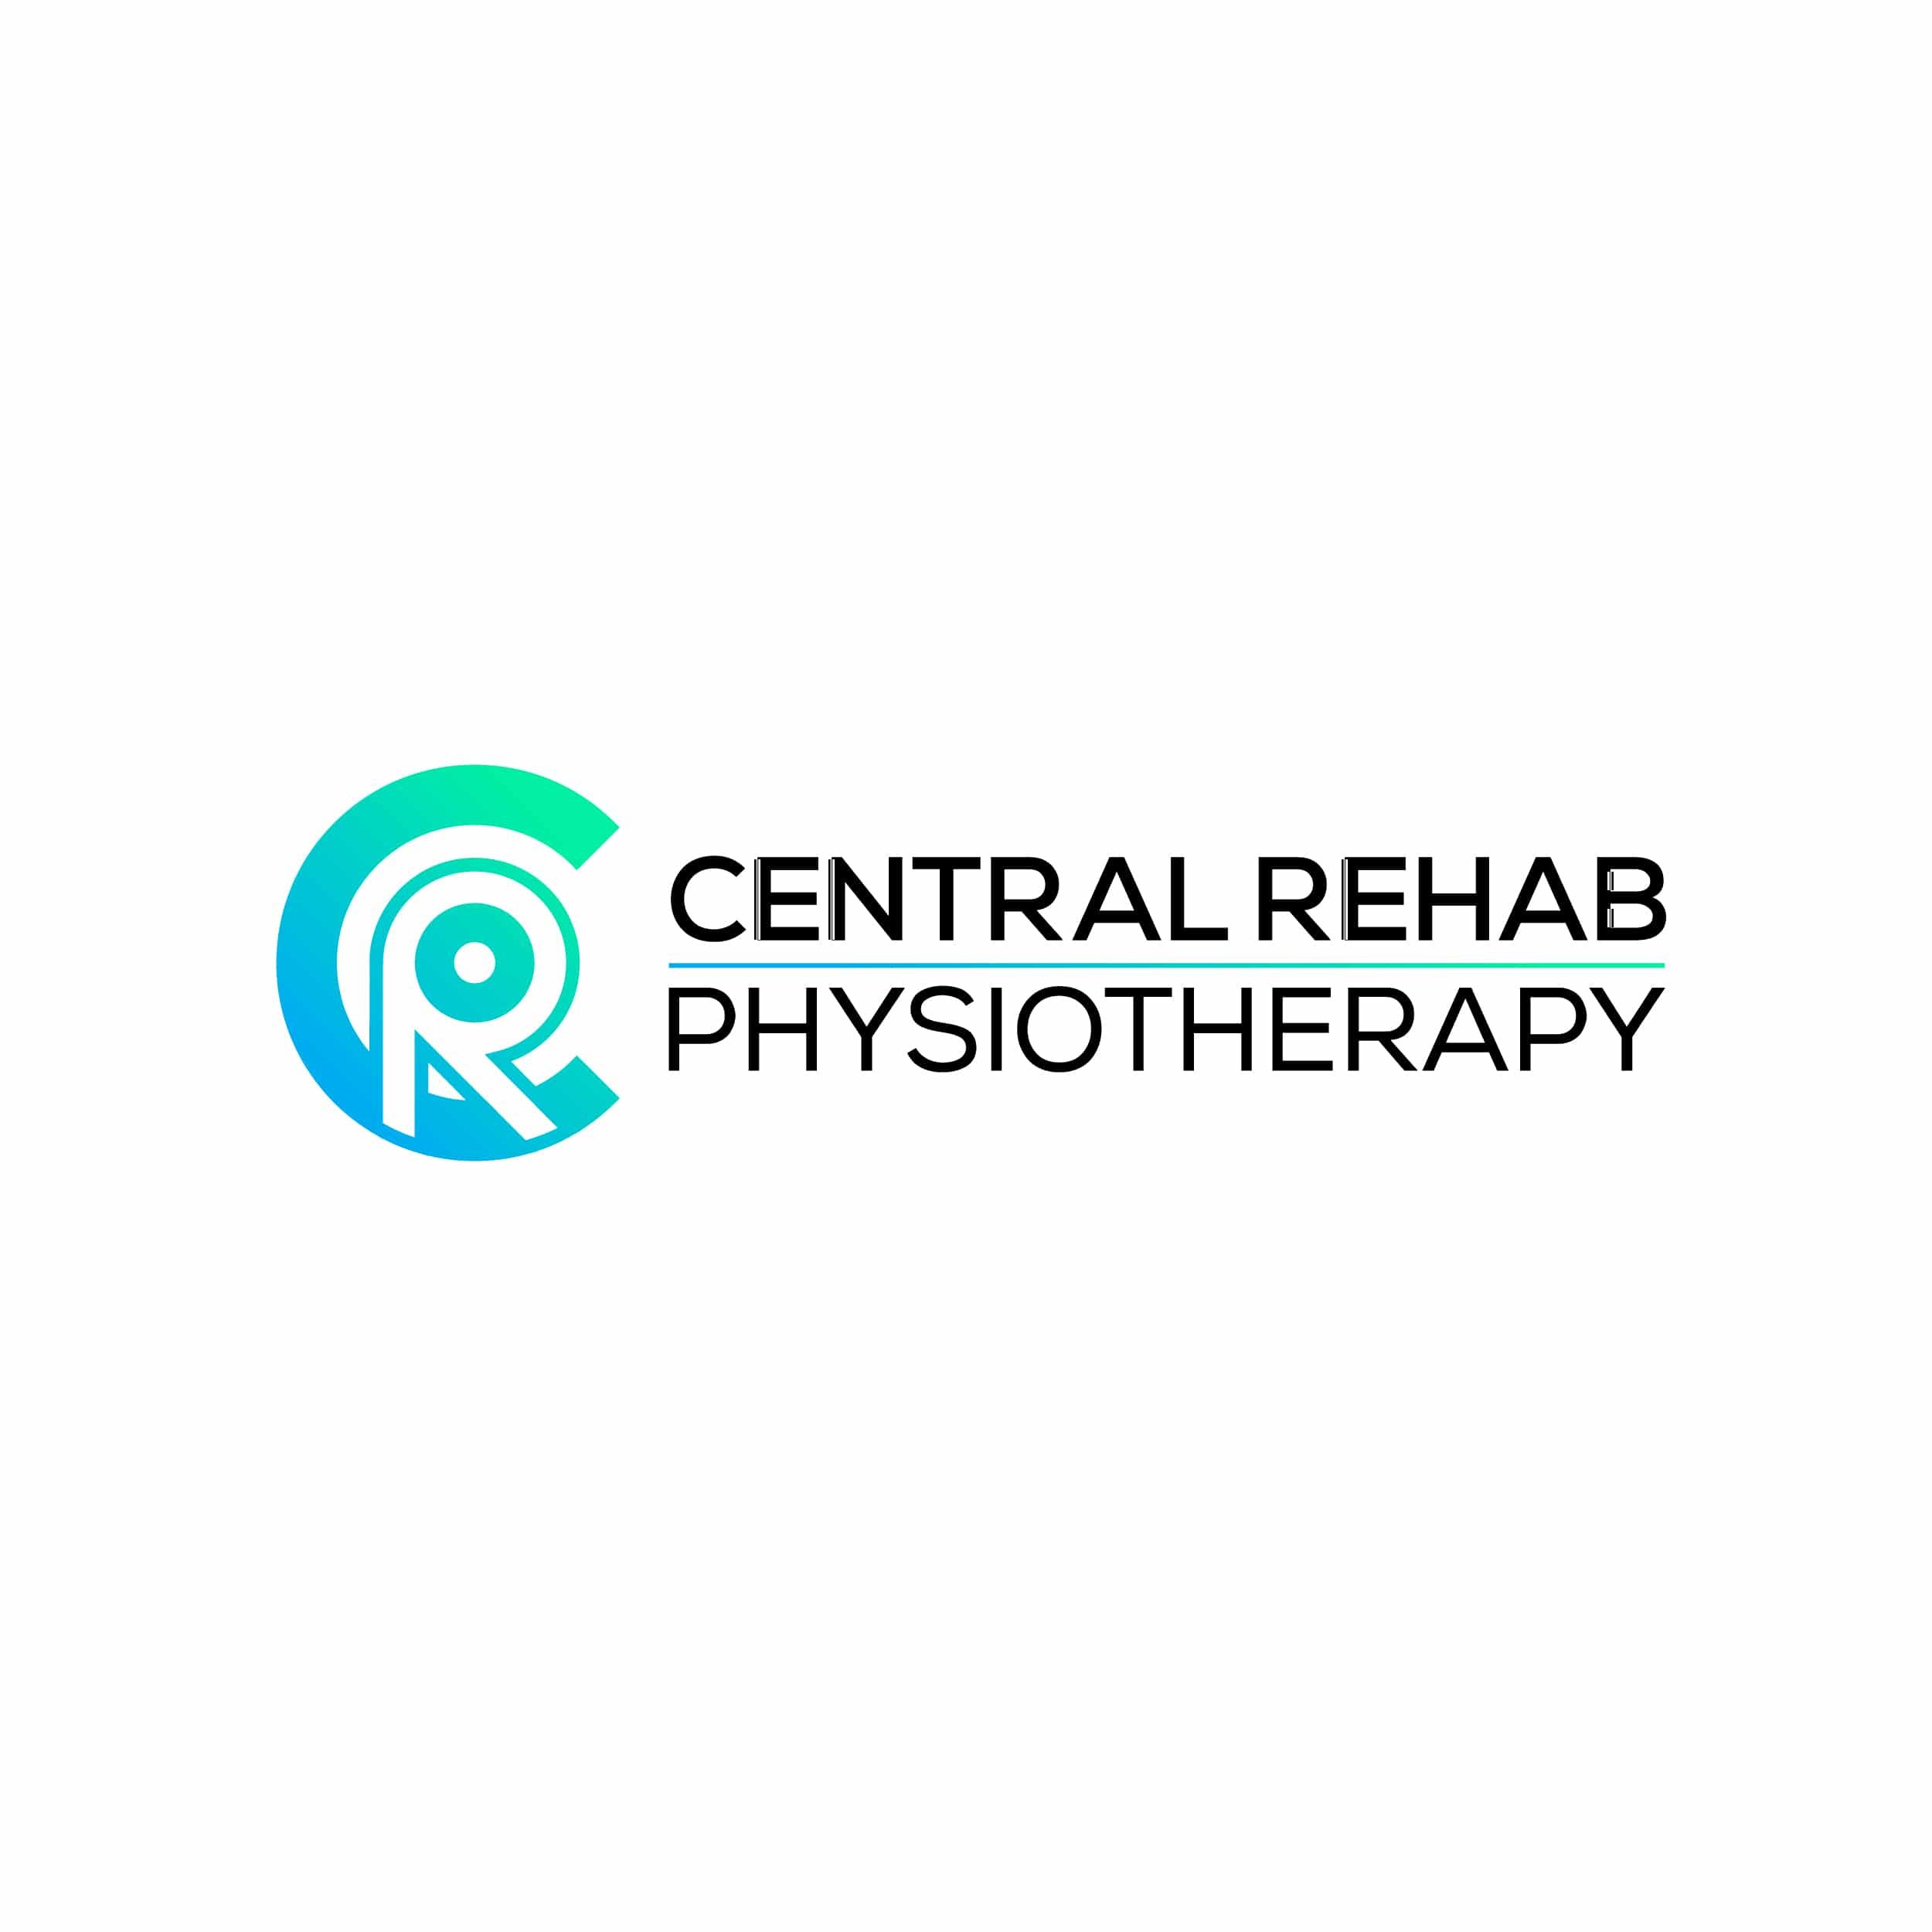 Central Rehab Physio